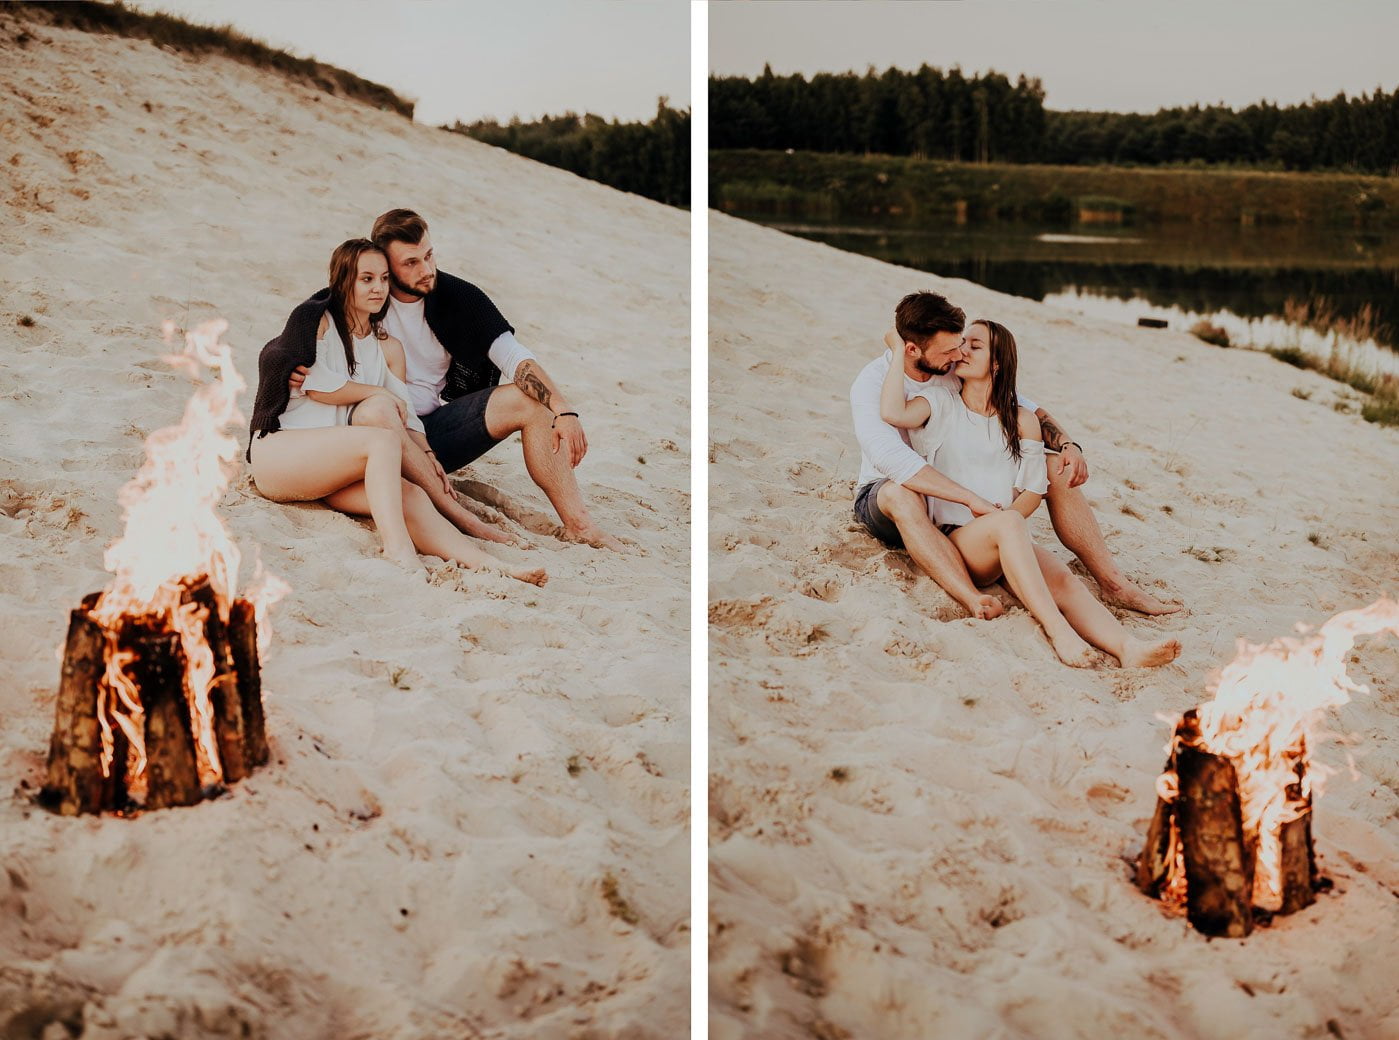 zakochana para siedzi na plaży przy ognisku